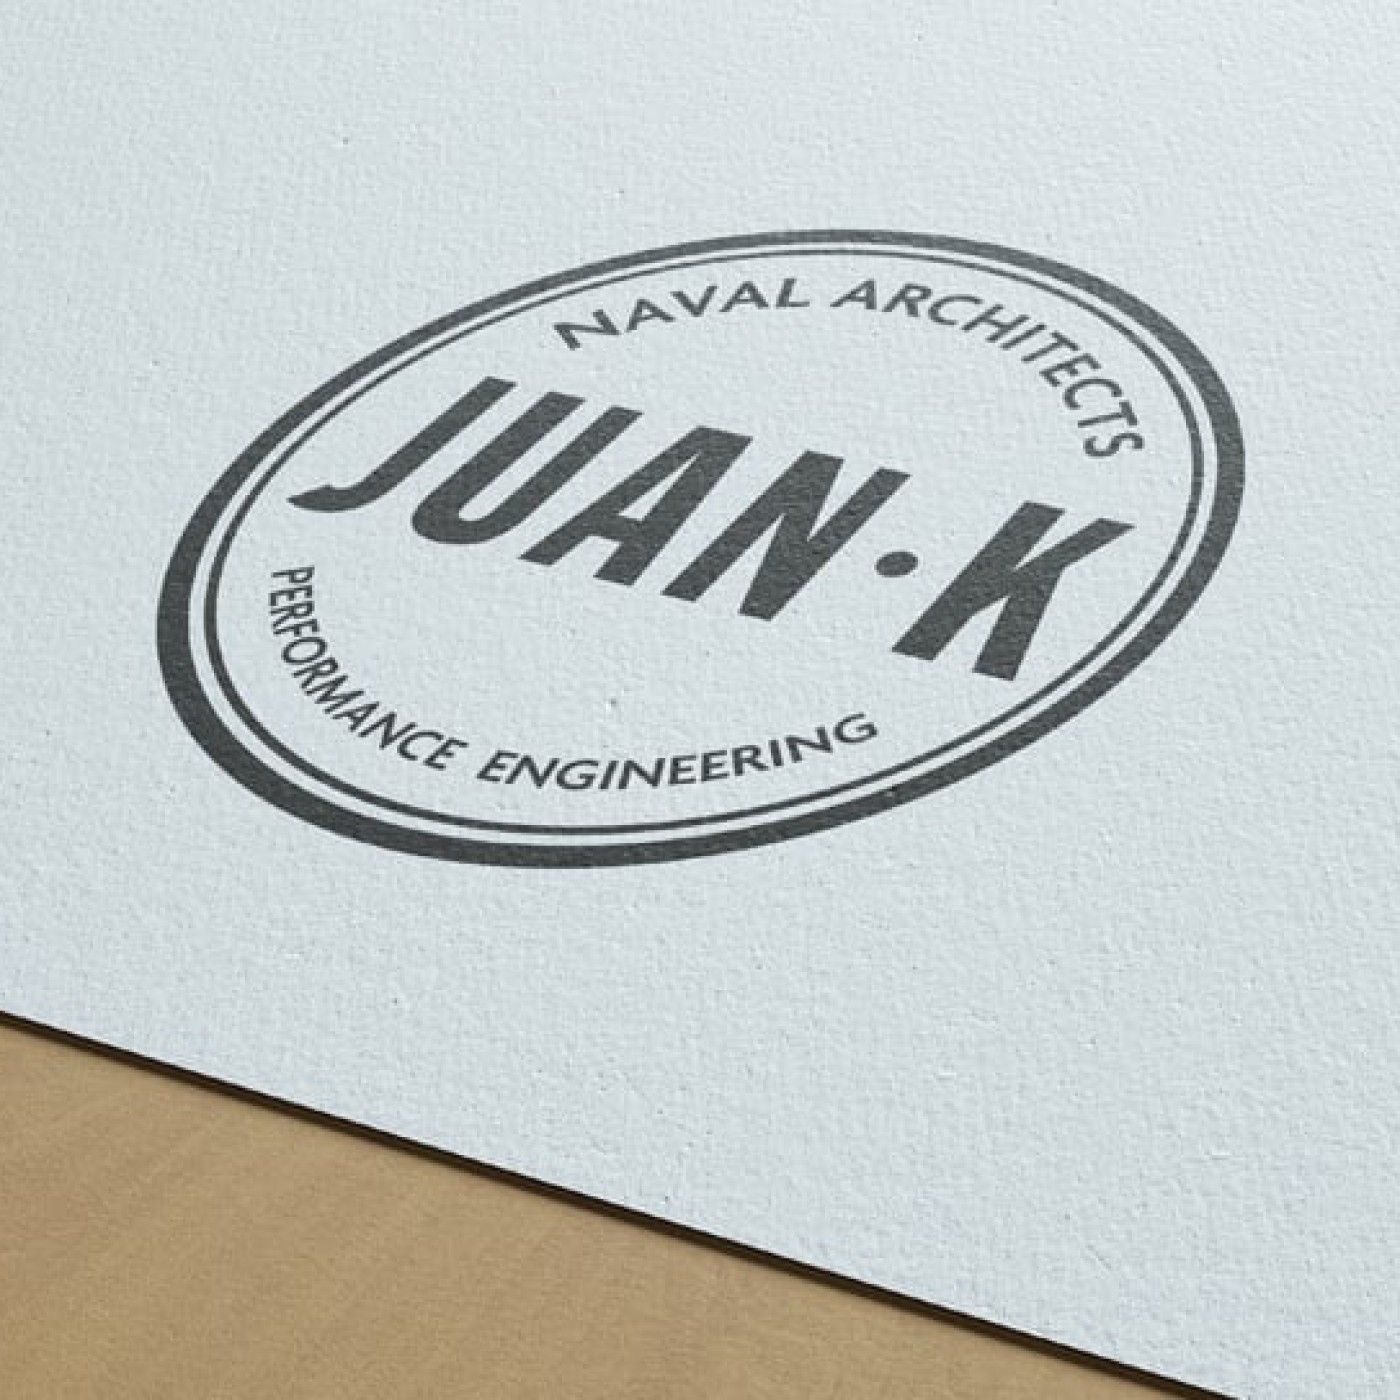 Juan-K-logo-on-paper